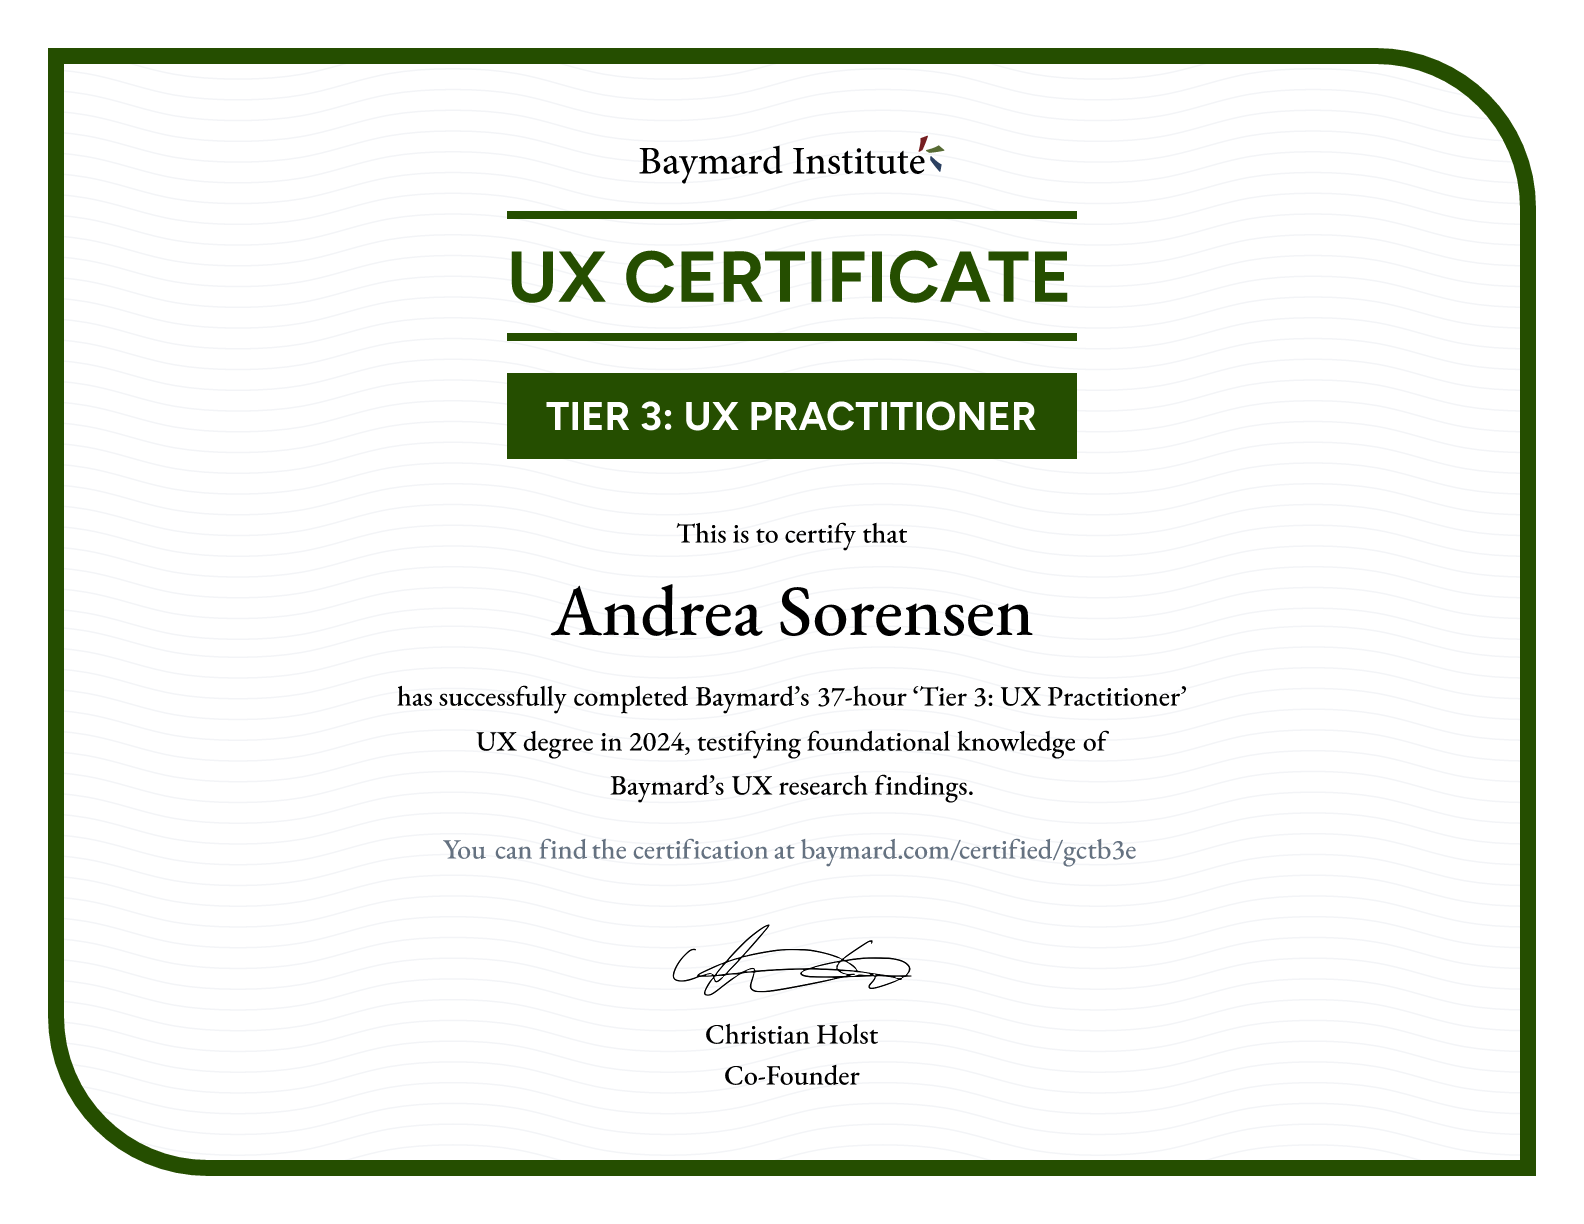 Andrea Sorensen’s certificate